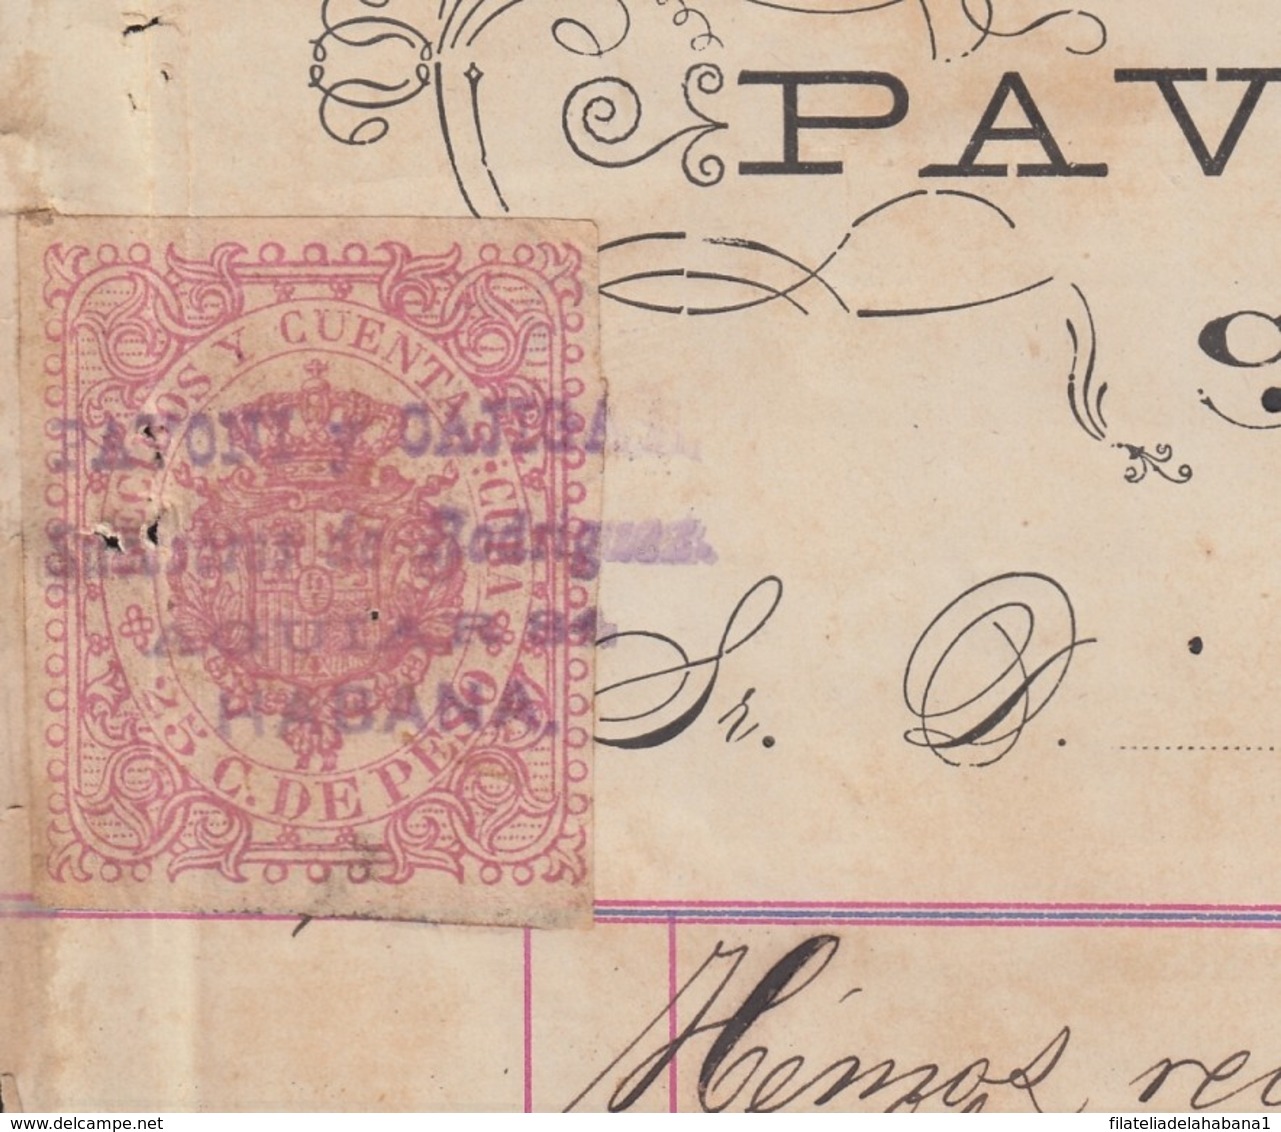 REC-134 CUBA SPAIN ESPAÑA (LG1642) RECIBOS REVENUE 1884. SASTRERIA PAVONI COSTUMES HARDWARE INVOICE. - Postage Due